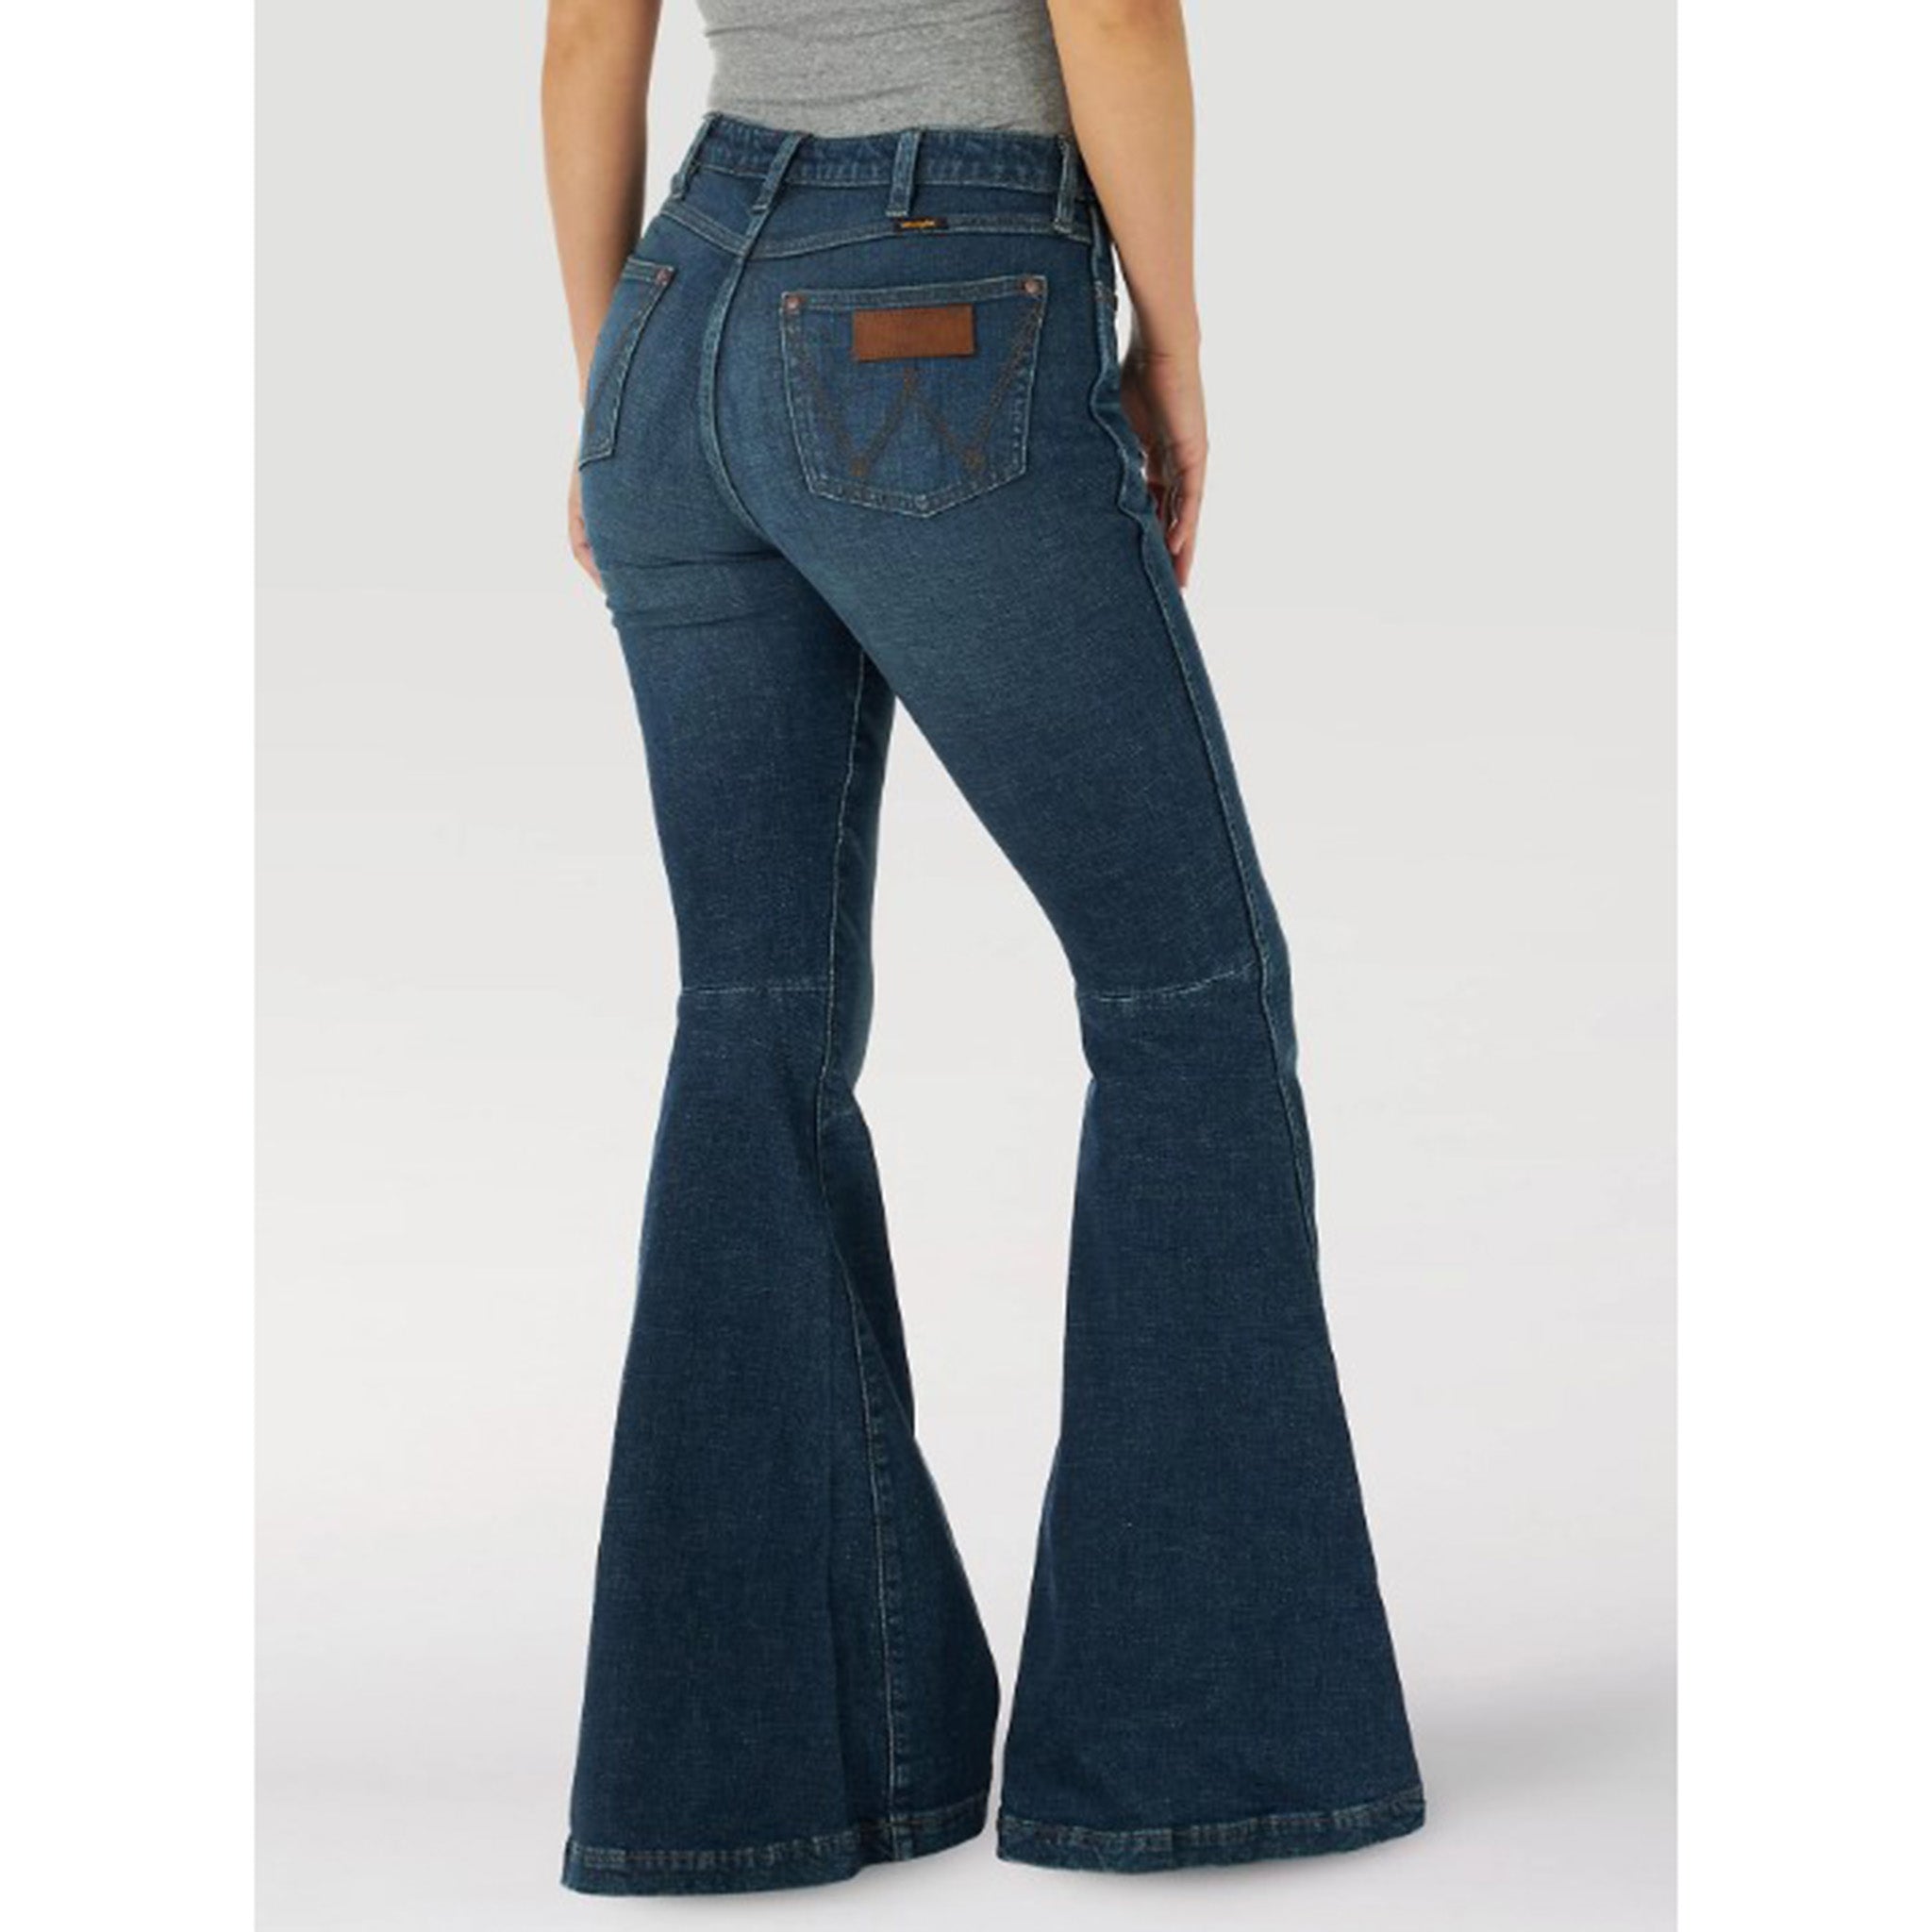 Wrangler Women's High Rise Jana Flare Jeans – Western Edge, Ltd.